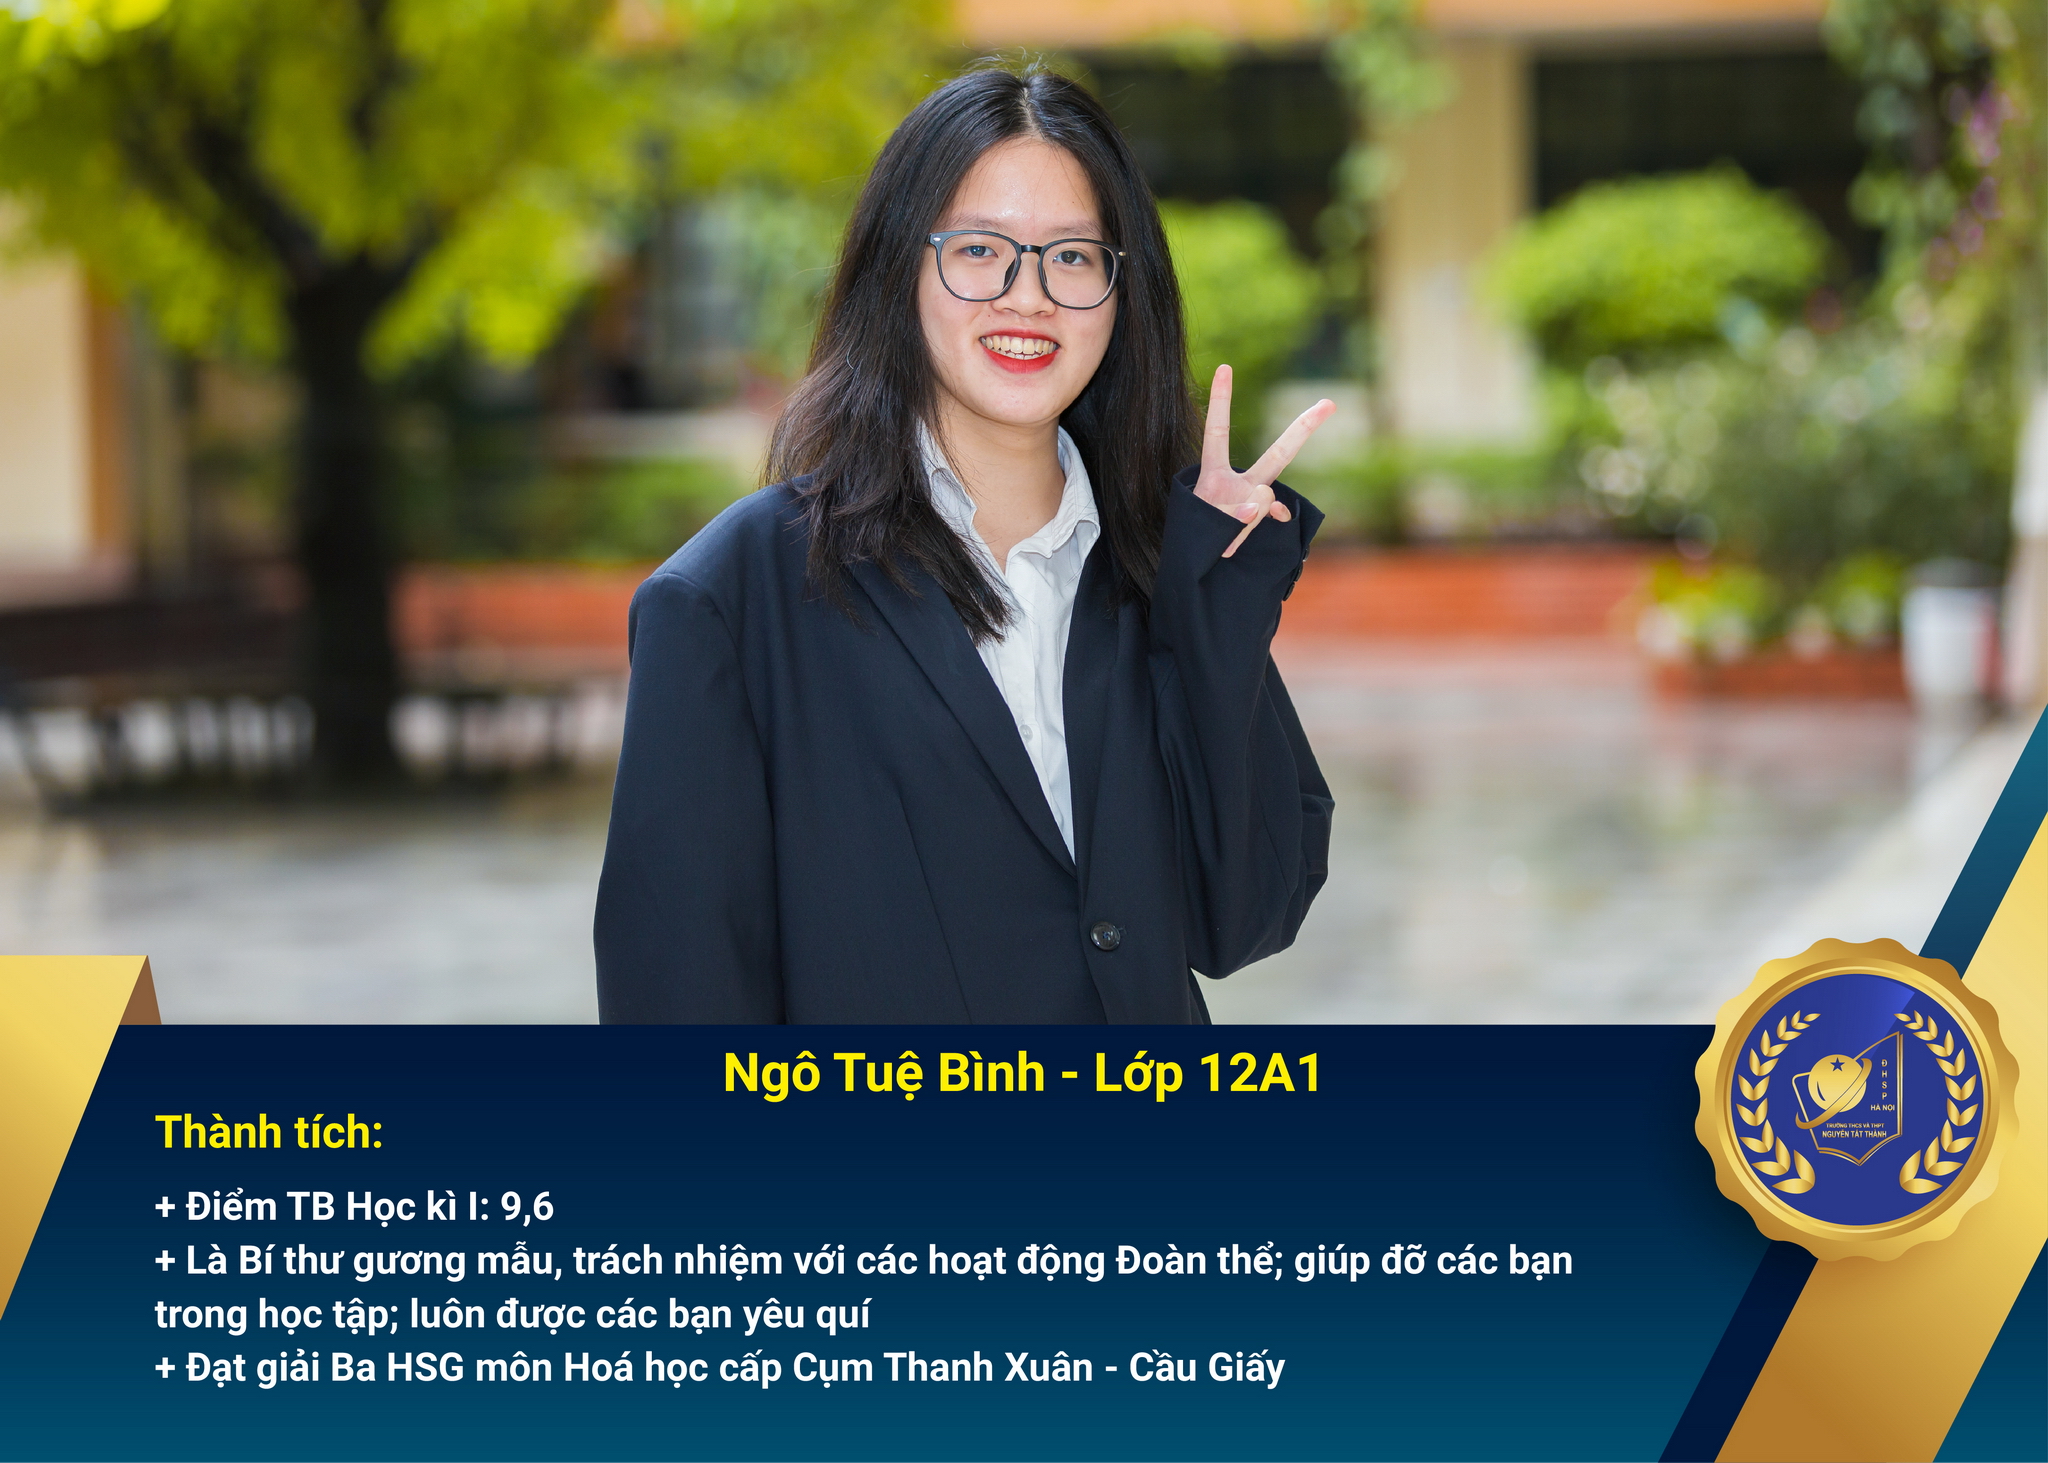 Chân dung học sinh nhận Học bổng Nguyễn Tất Thành lần thứ 41 và 42 – Khối 12 - năm học 2021 – 2022